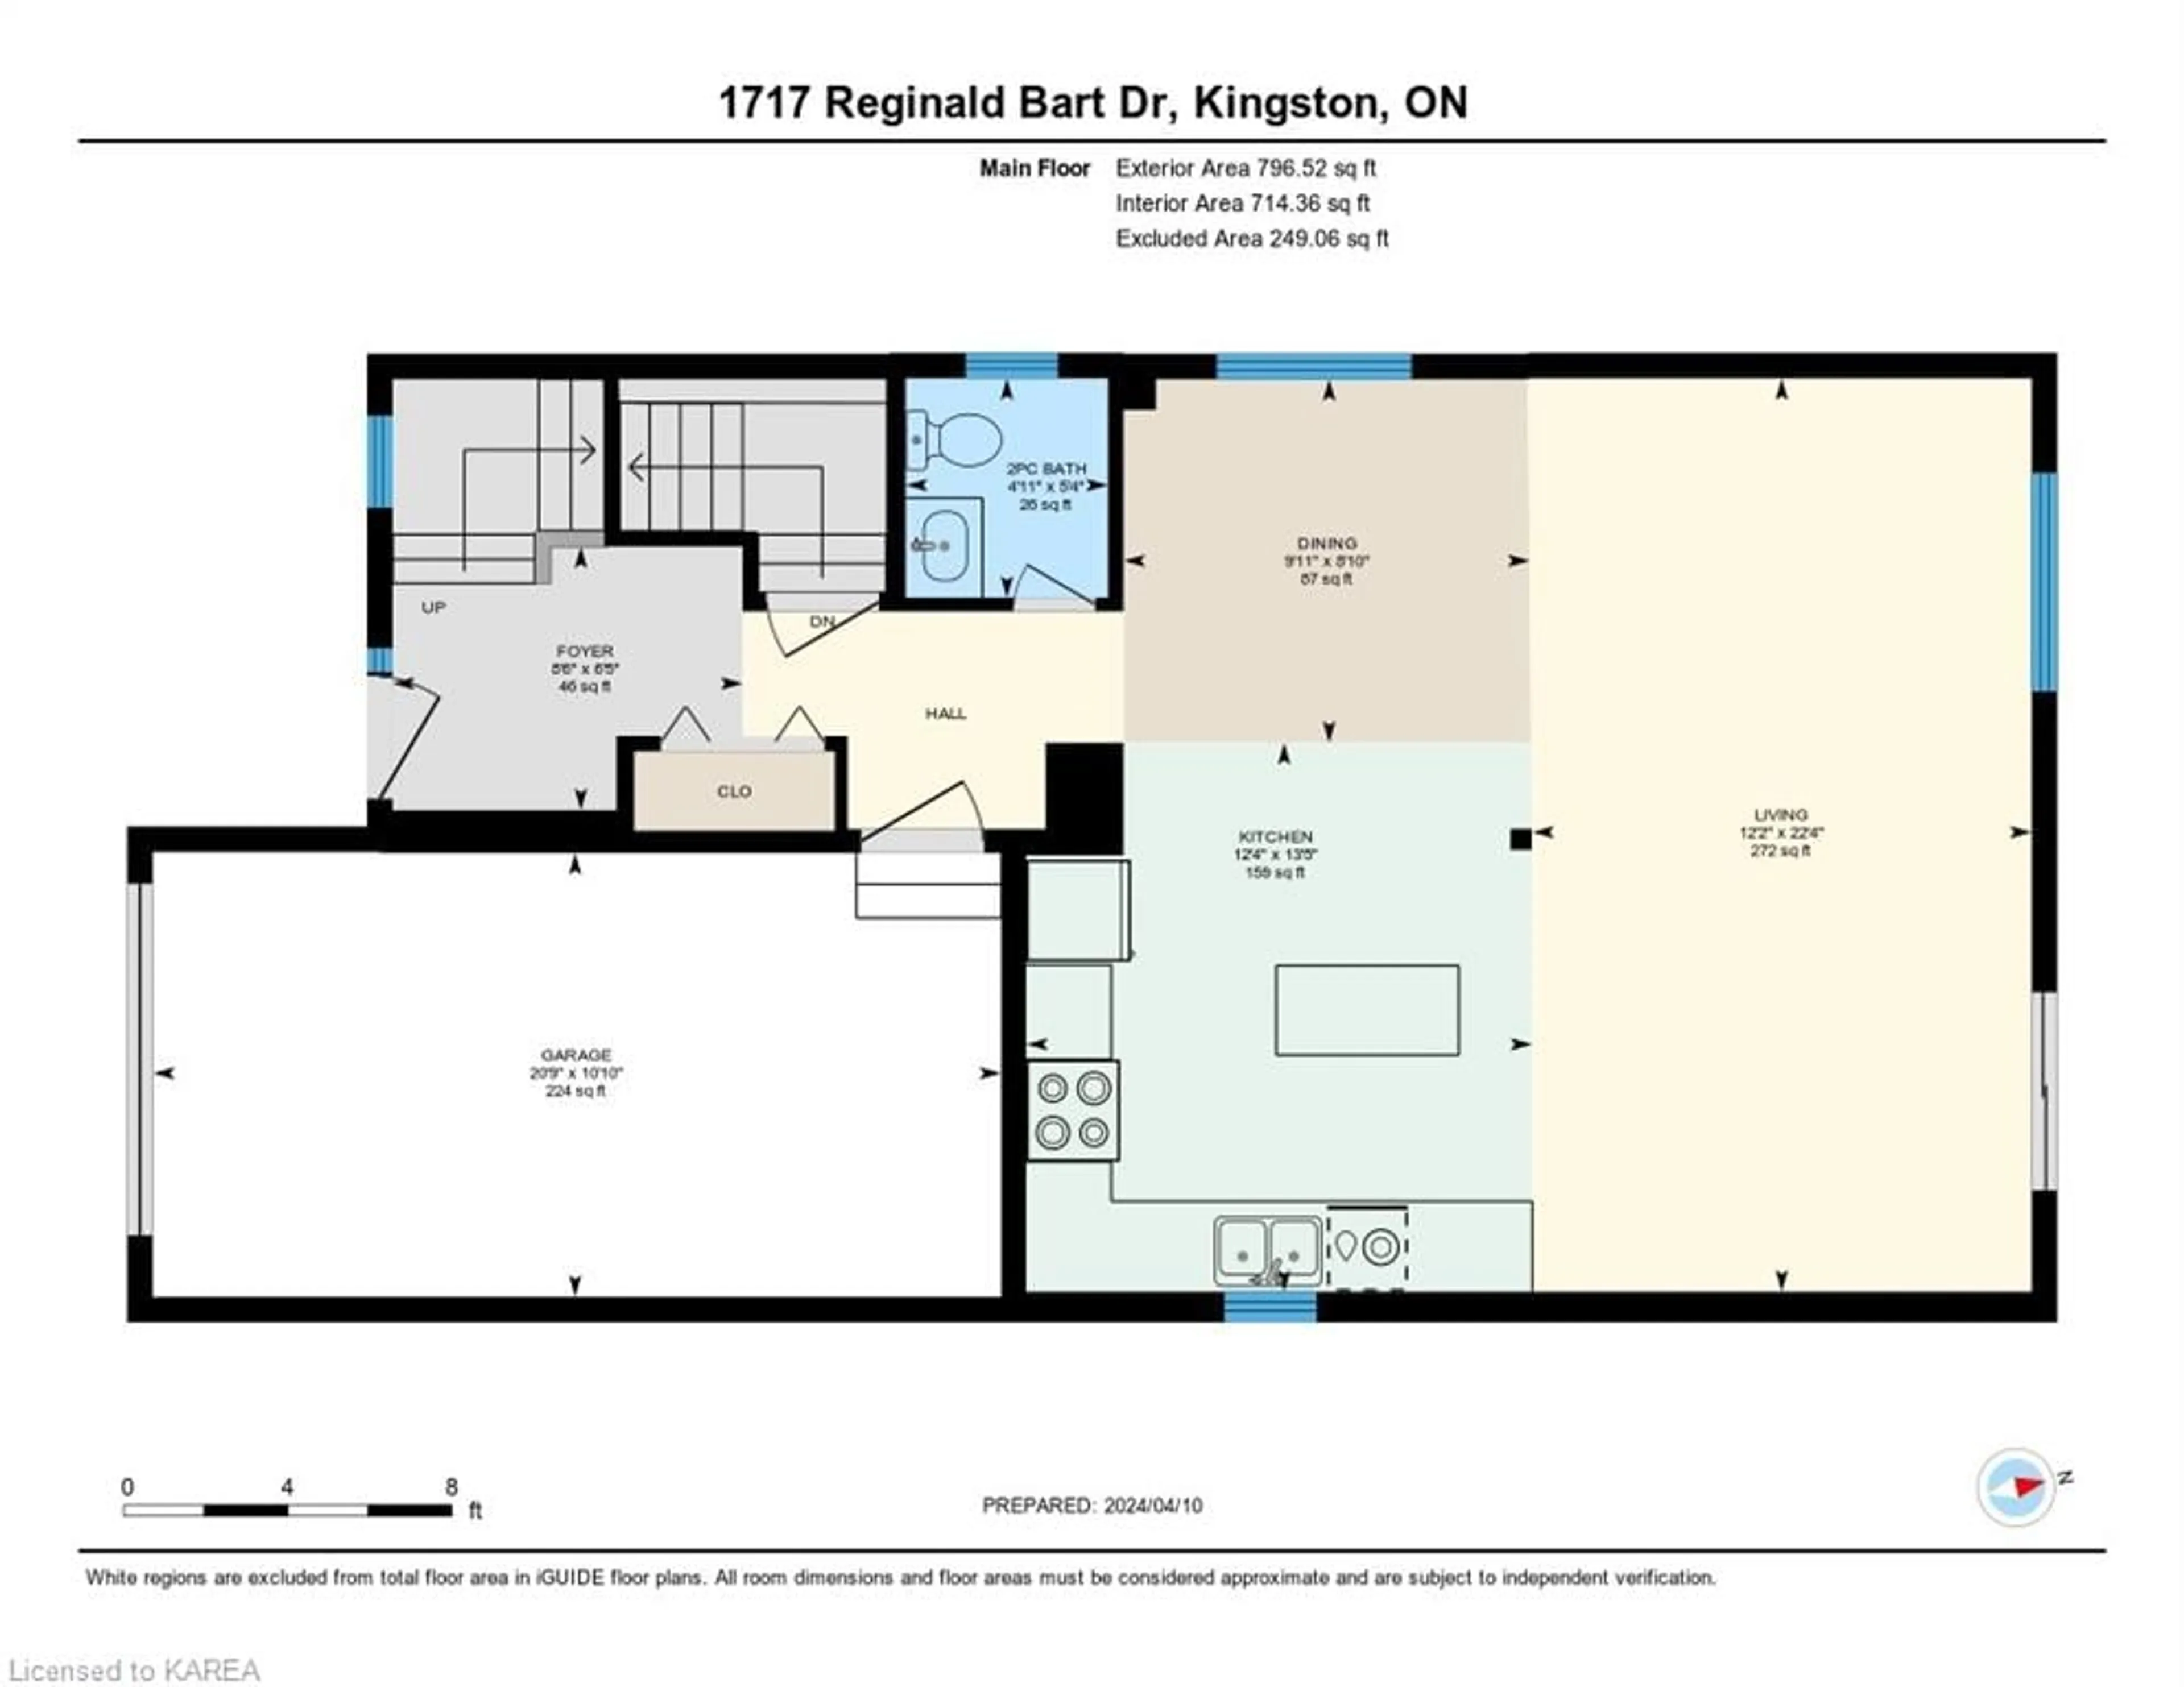 Floor plan for 1717 Reginald Bart Dr, Kingston Ontario K7K 0E8